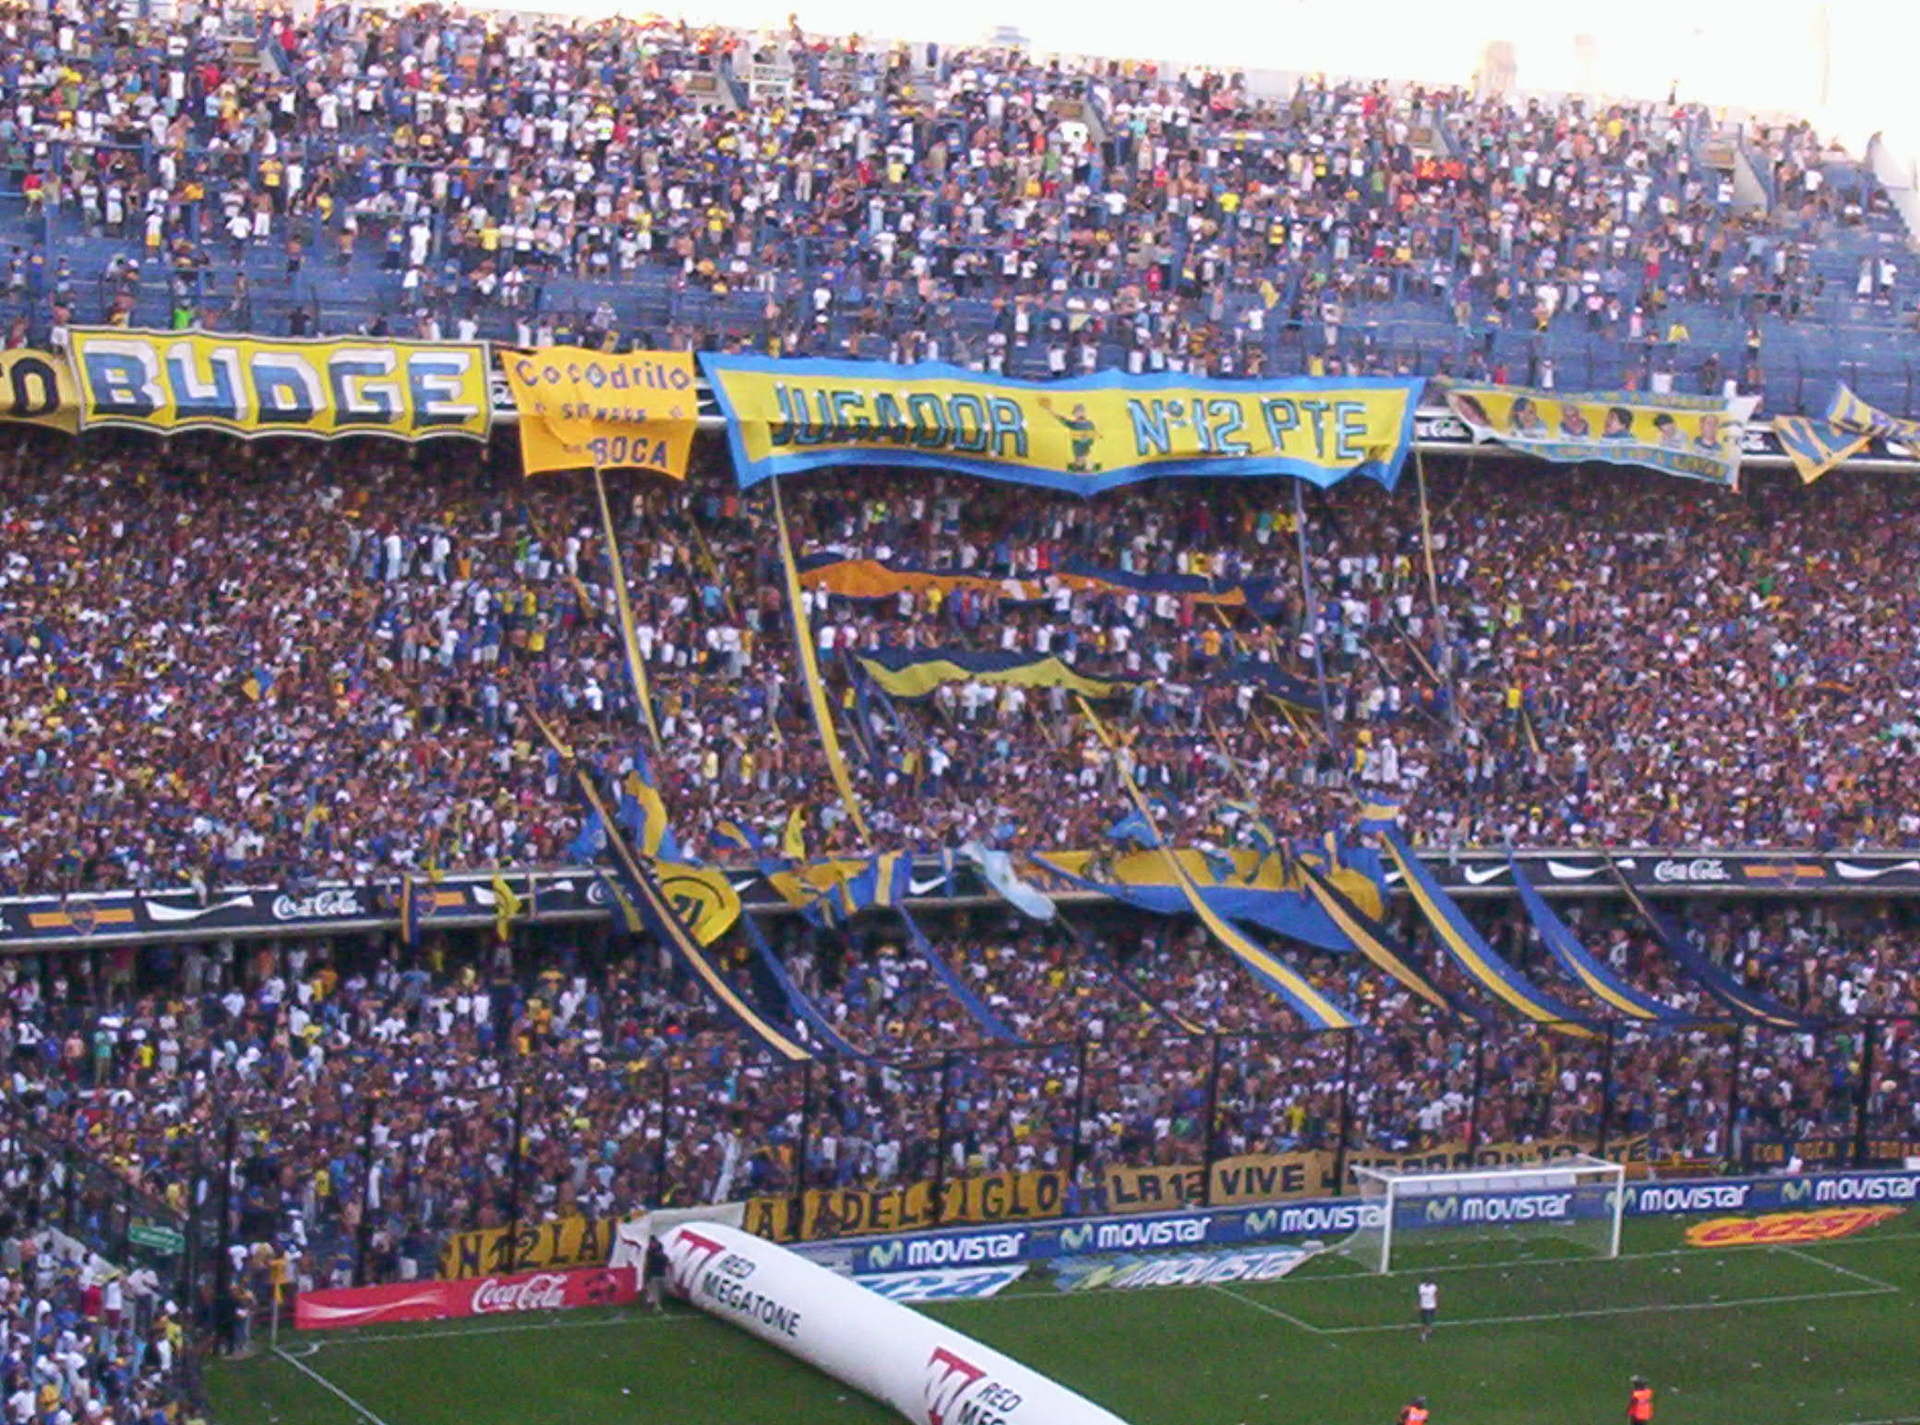 1920x1425 Boca Juniors images boca junior stadium HD wallpaper and background photos